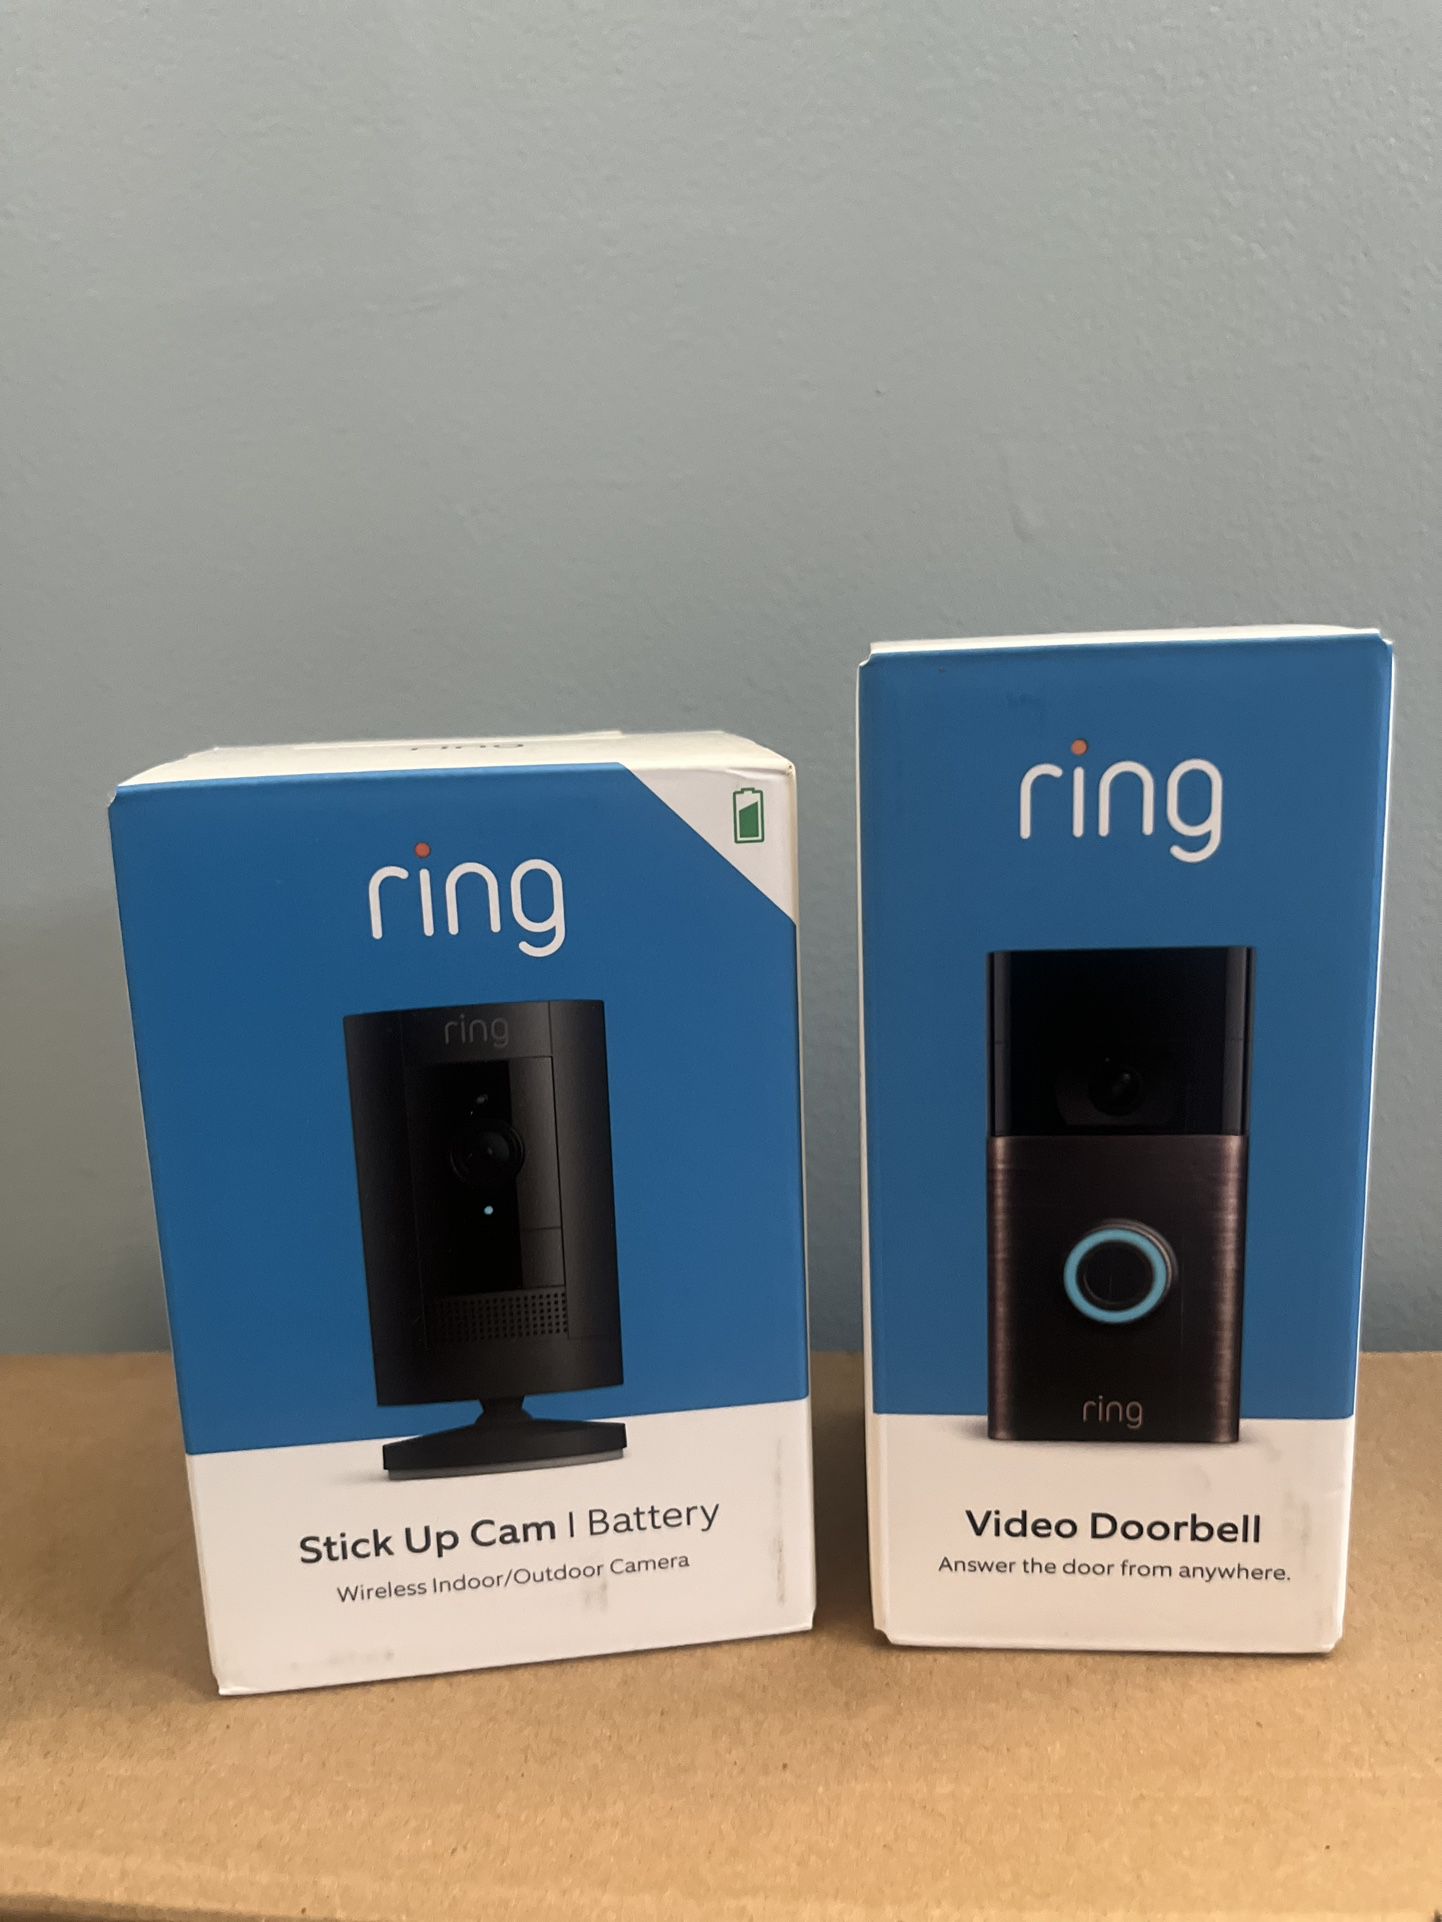 [READ DESC] BRAND NEW UNOPENED Ring Video Camera Doorbell Kit: Outdoor Doorbell + Stickup Cam - Home Security Bundle 🏠📸 